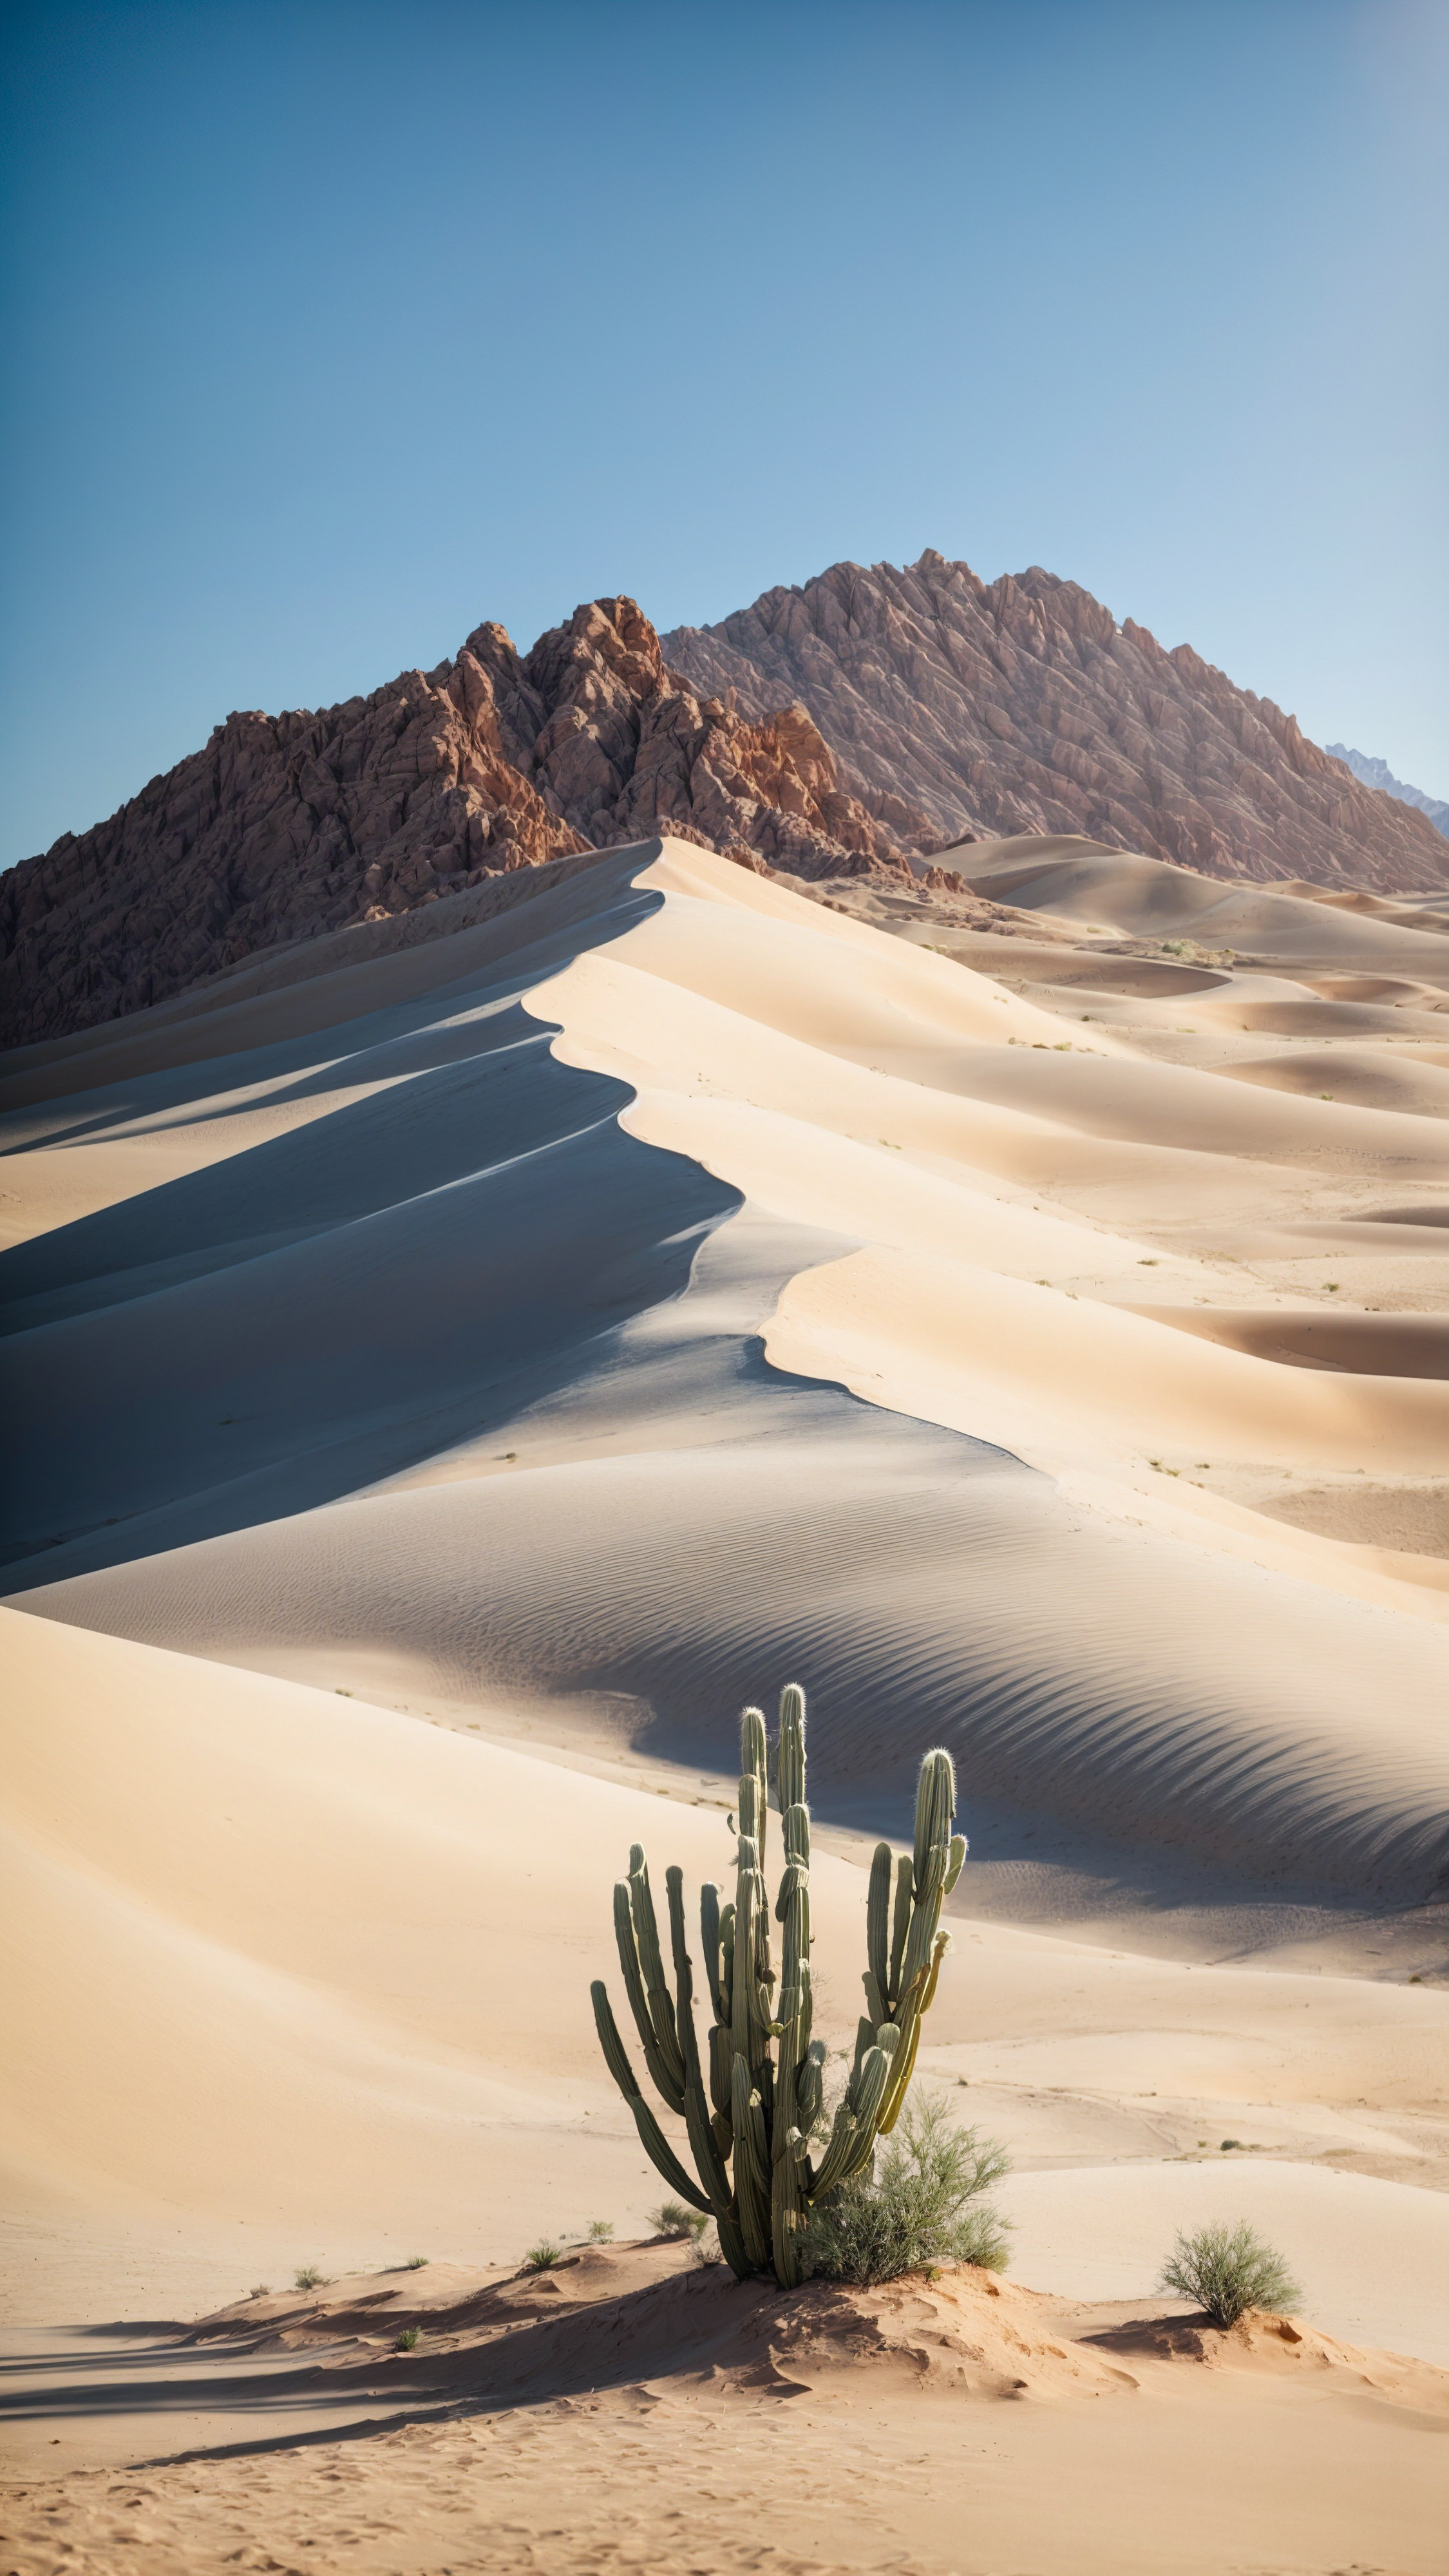 Découvrez le charme d'une montagne désertique avec une dune de sable et un cactus, sous un ciel bleu clair et un soleil, avec ce fond d'écran de vue sur la montagne de beaux paysages. 